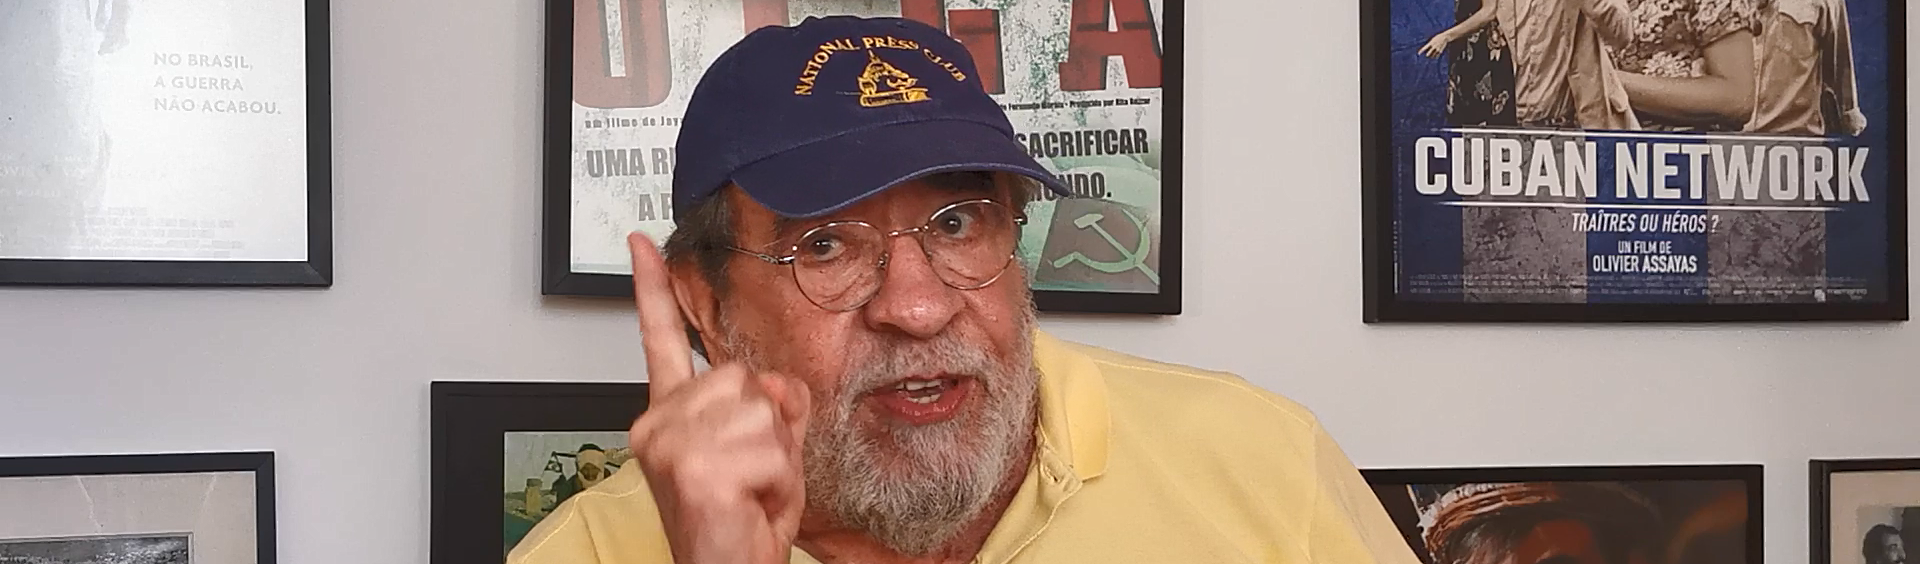 Lula: Não há na história outro que tenha tirado 40 milhões da miséria sem dar um só tiro, diz Fernando Morais